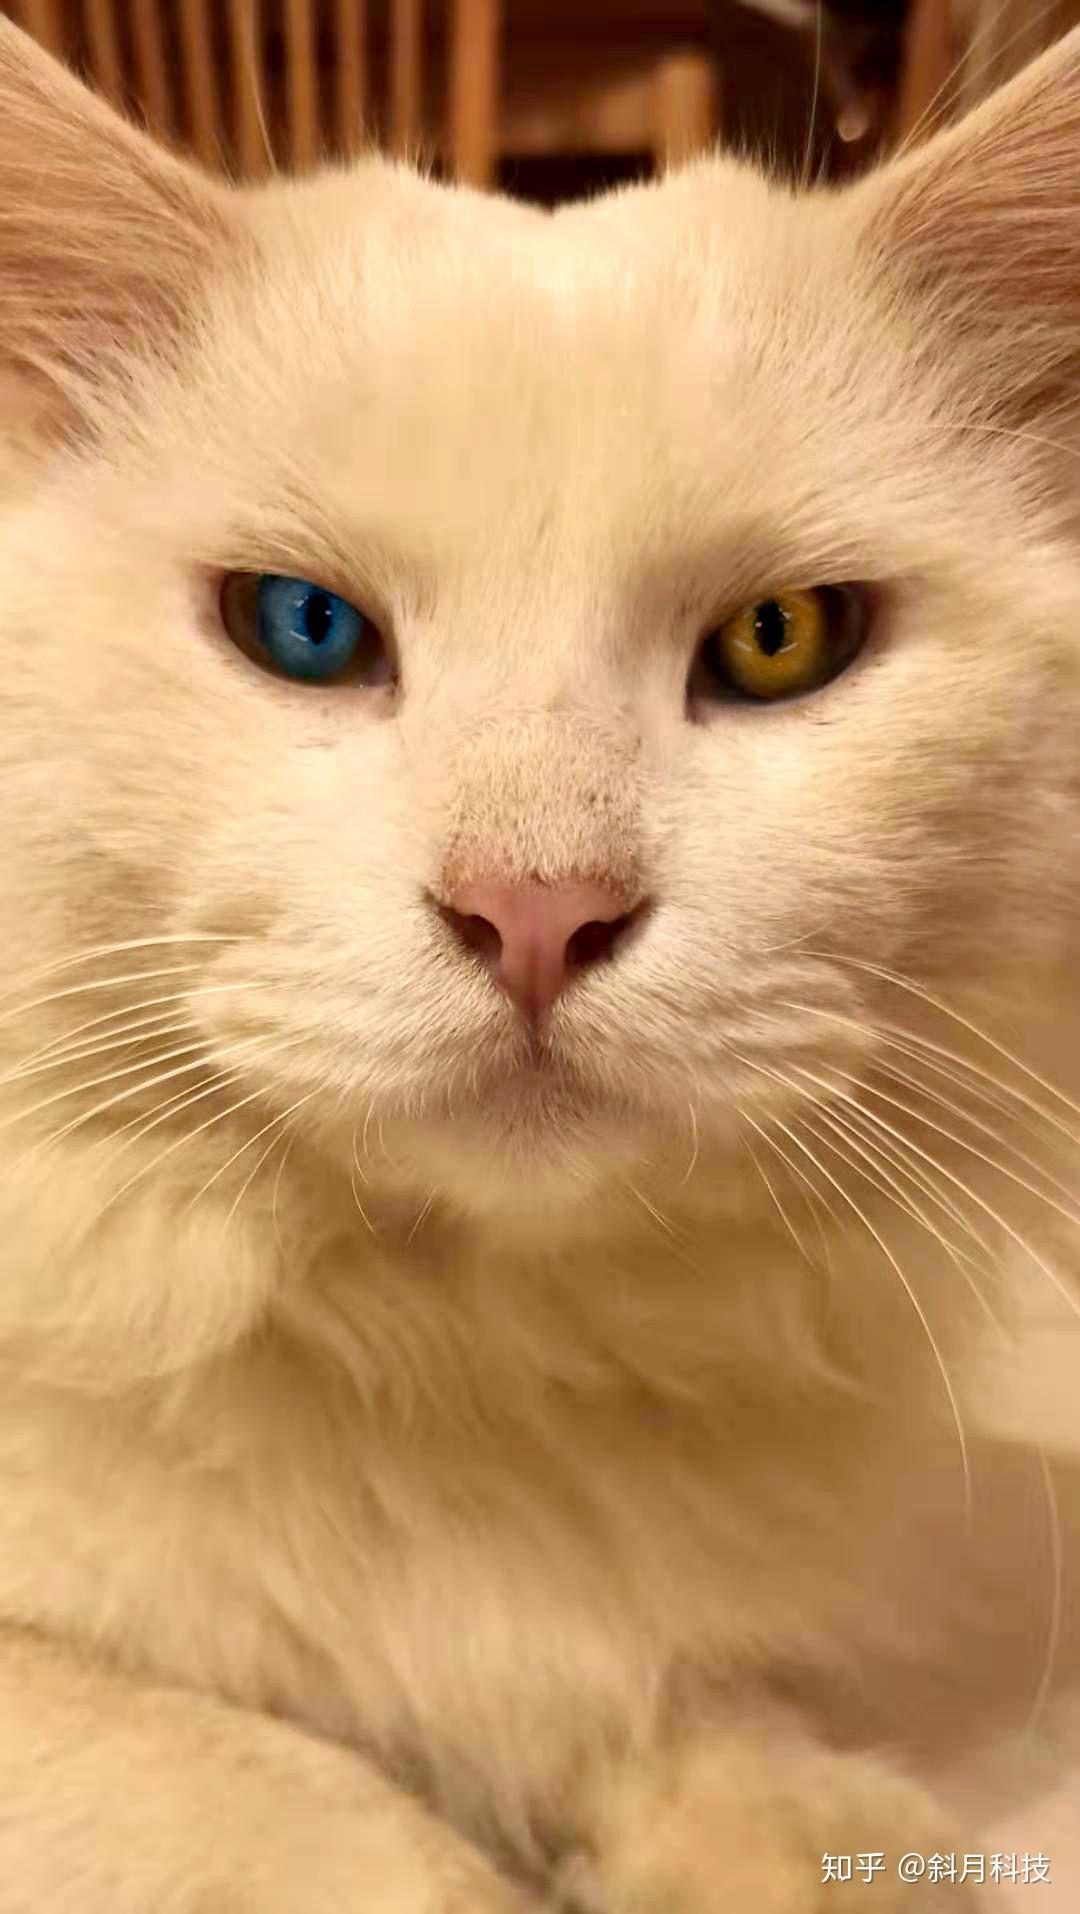 你们见过的最漂亮的猫眼睛是什么颜色?